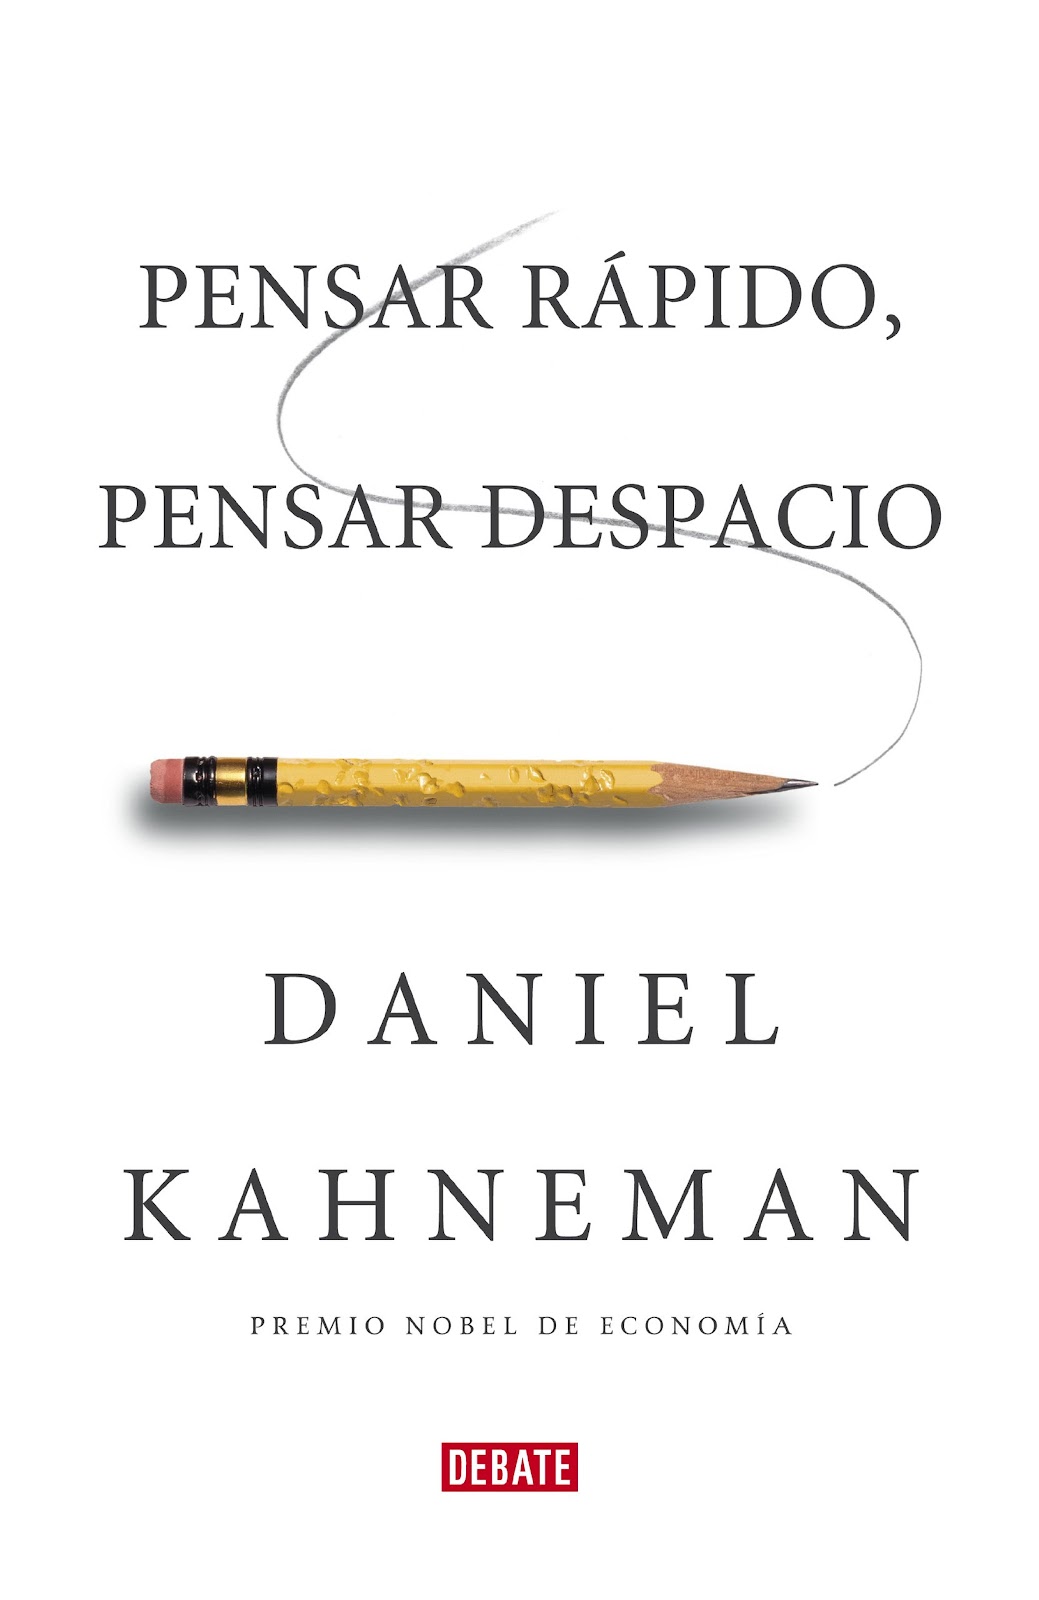 'Pensar rápido, pensar despacio', Daniel Kahneman.